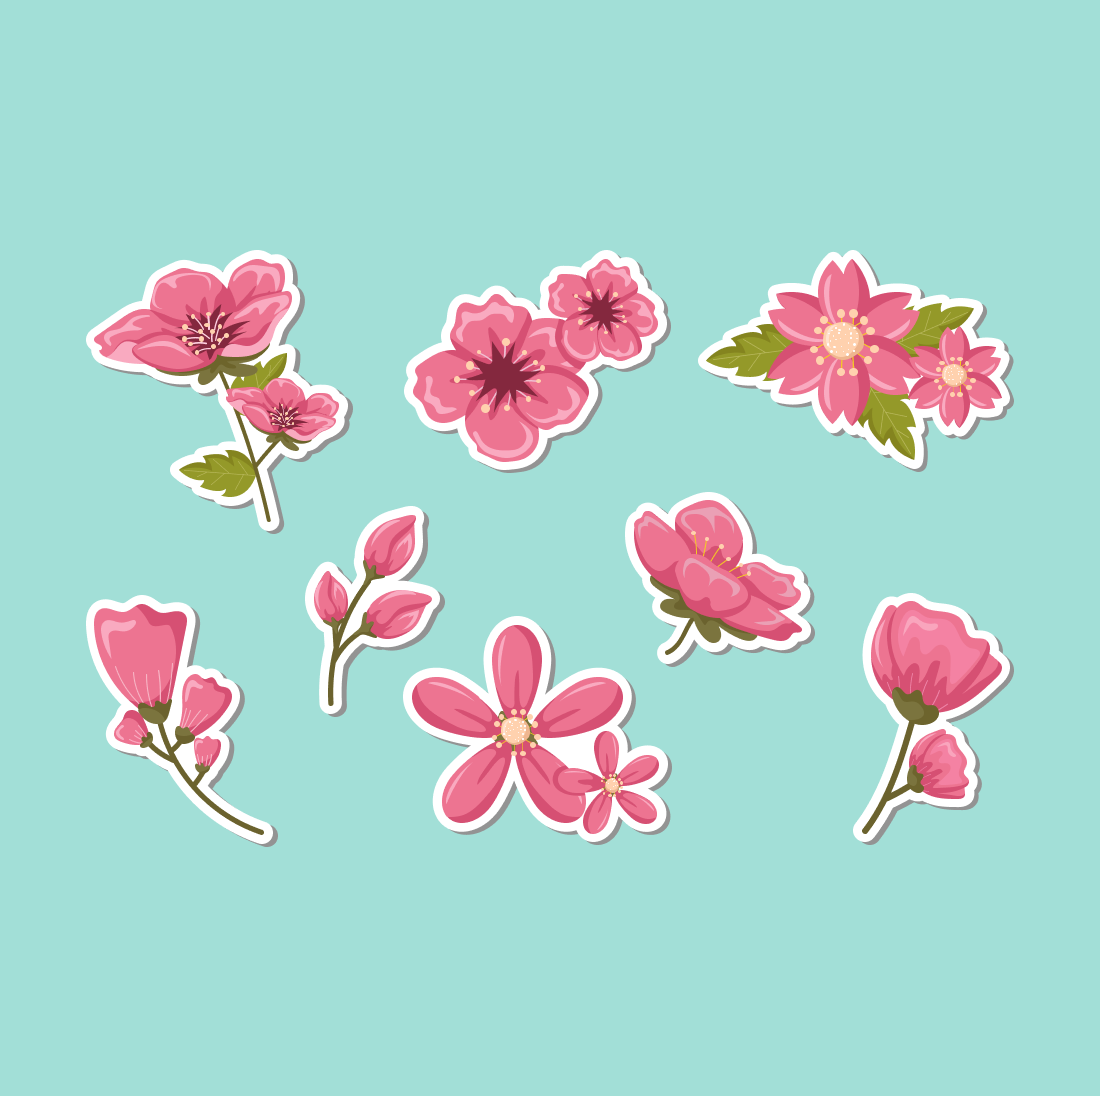 Cherry Blossom SVG cover.